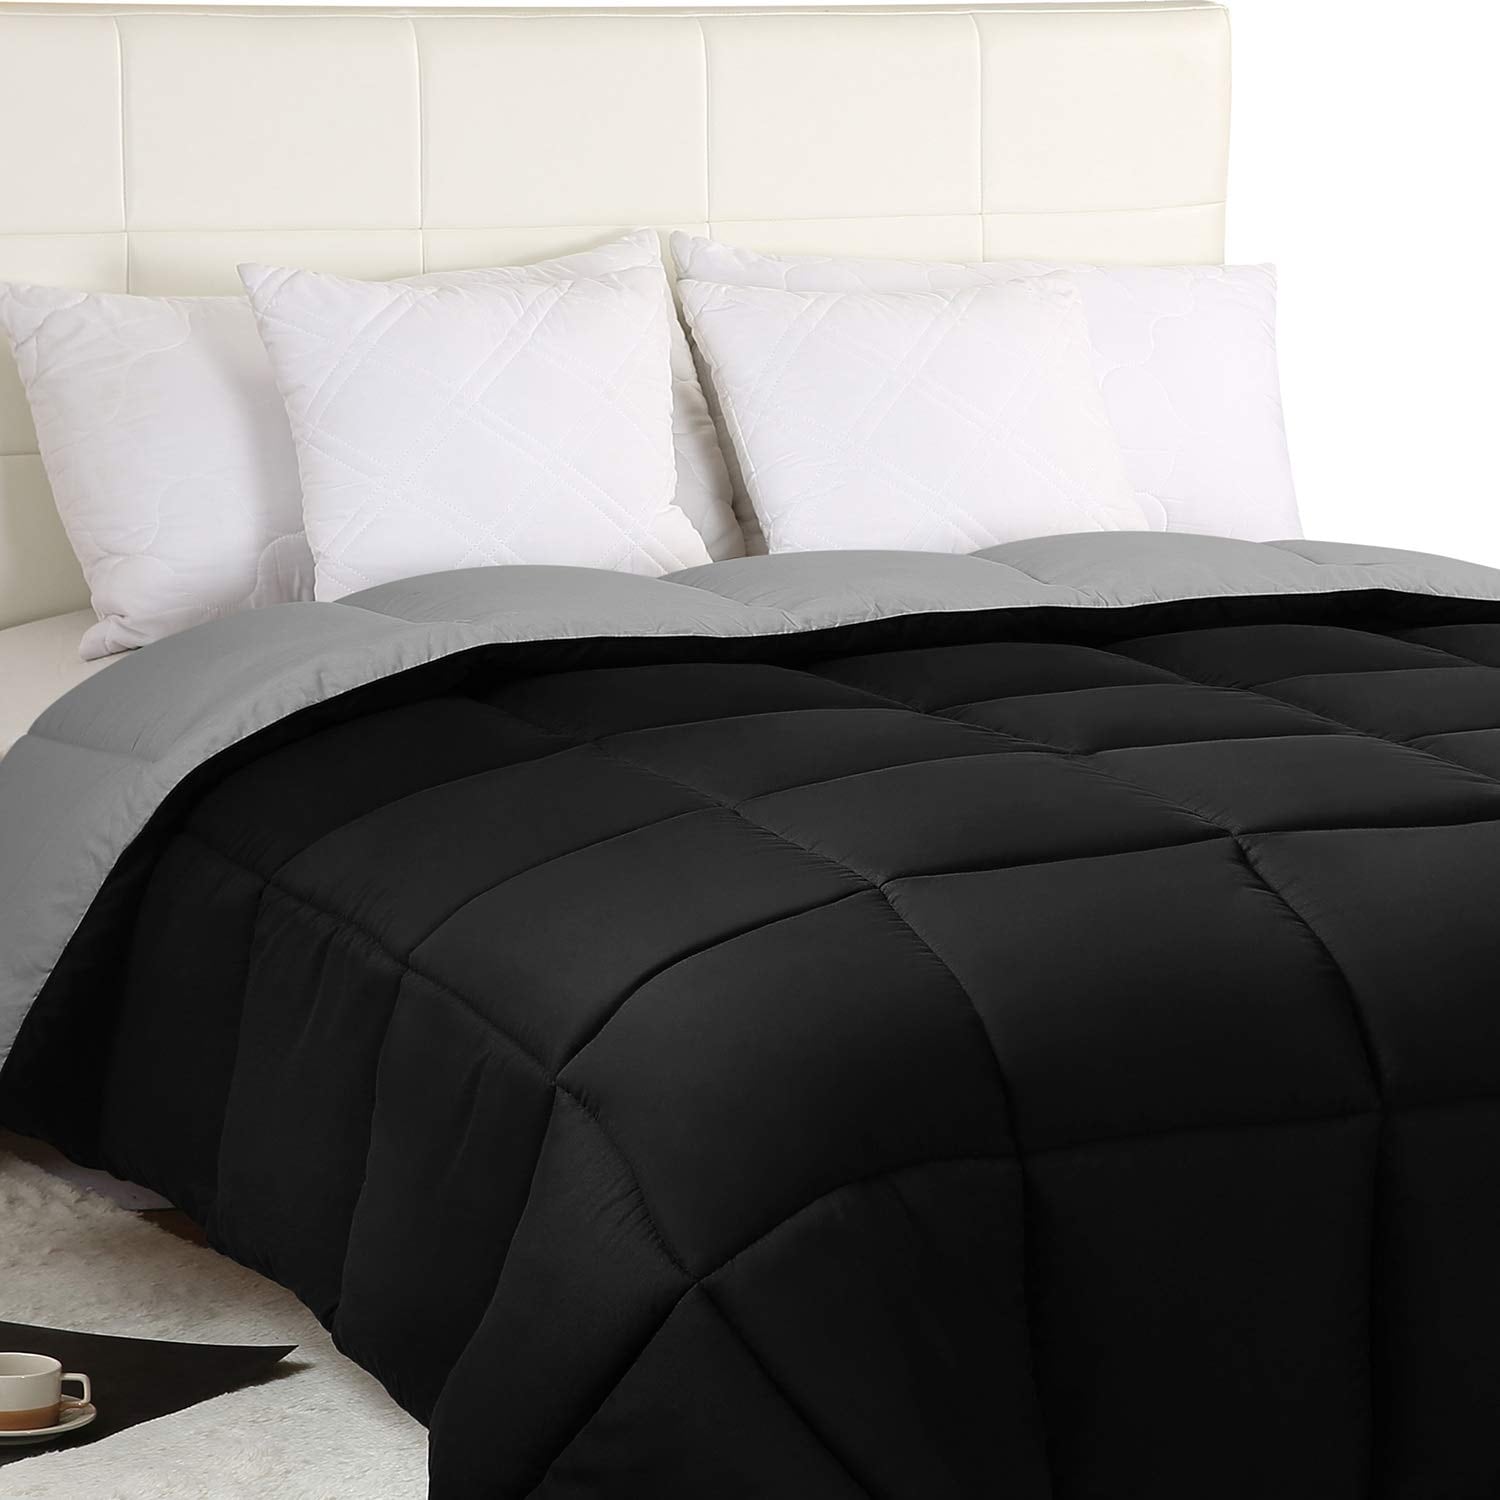 Utopia Bedding Queen Comforter Set (Grey) with 2 Pillow Shams